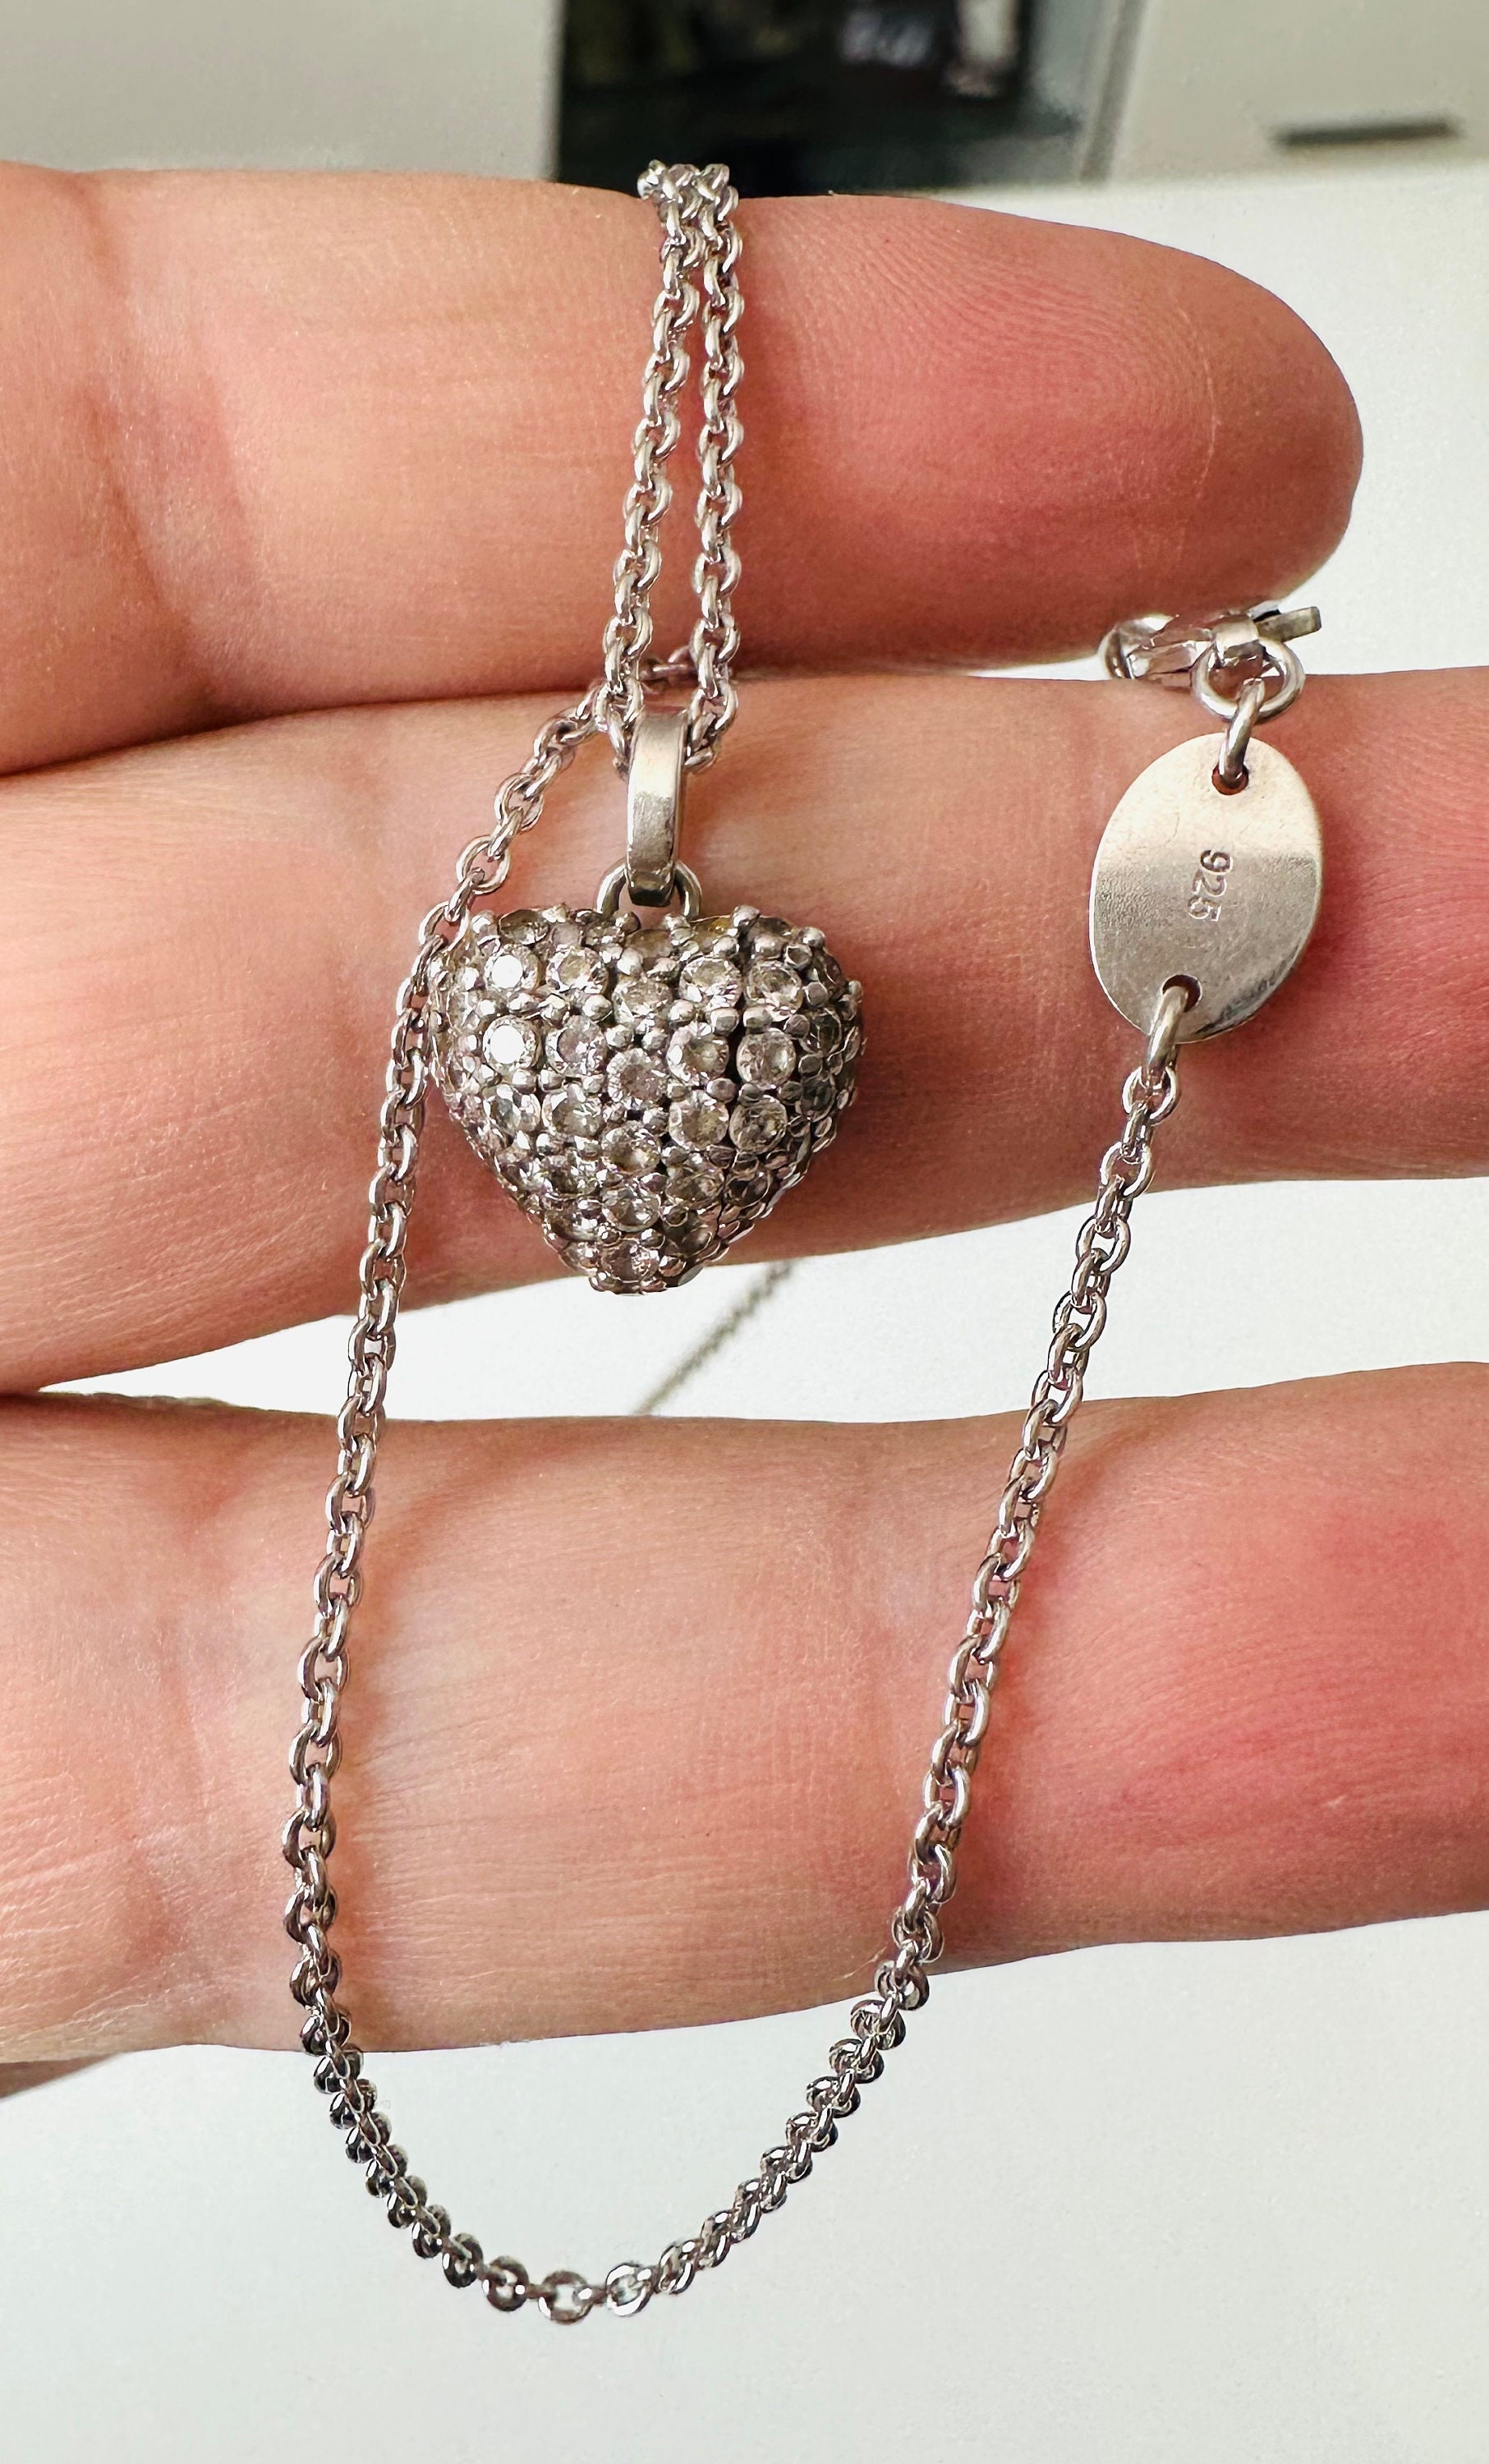 Schöne Halskette Christ Anhänger mit Designger Herz Silber von wertvolle 925 und Zirkonia Steinen.